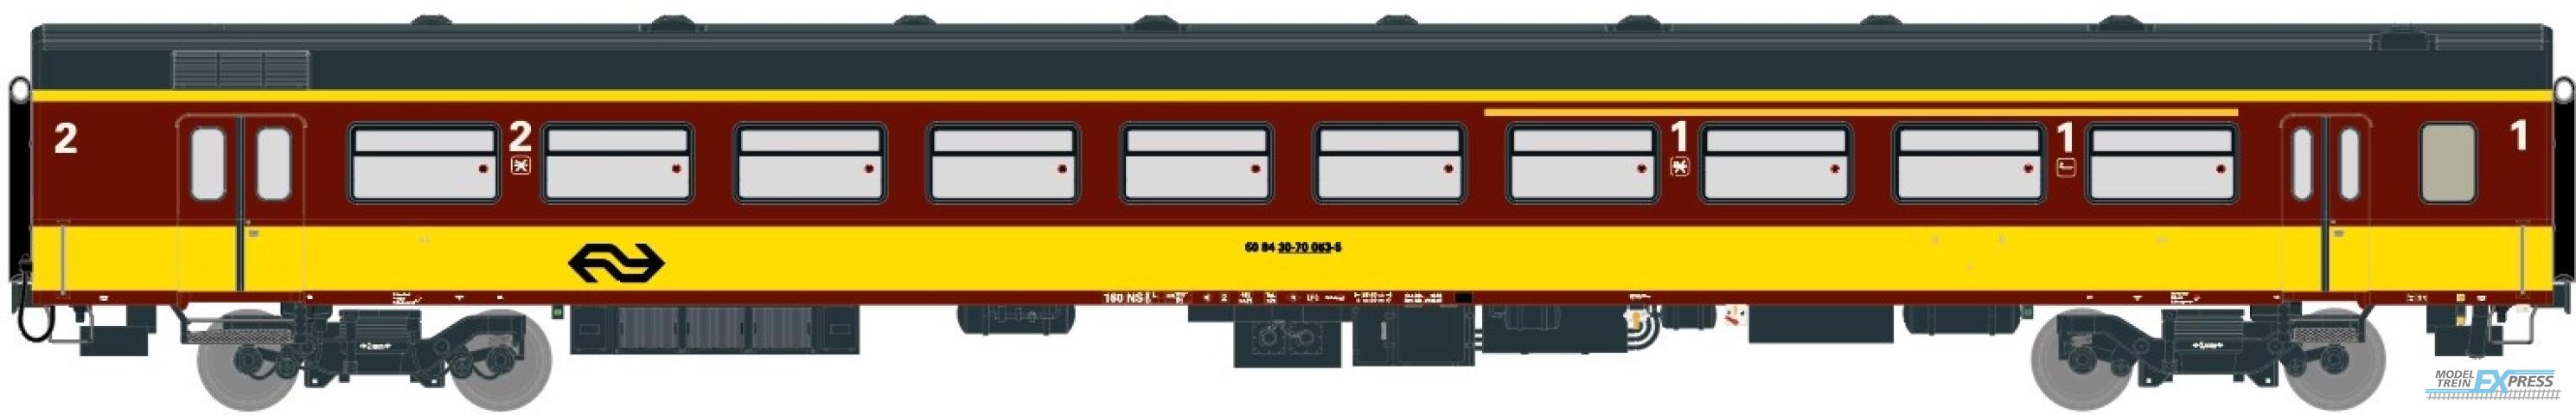 Exact-train 11083 NS ICR (Originalversion) für den Beneluxzug nach Belgien Reisezugwagen A4B6 ( Farbe Gelb / Rot), Ep. IV